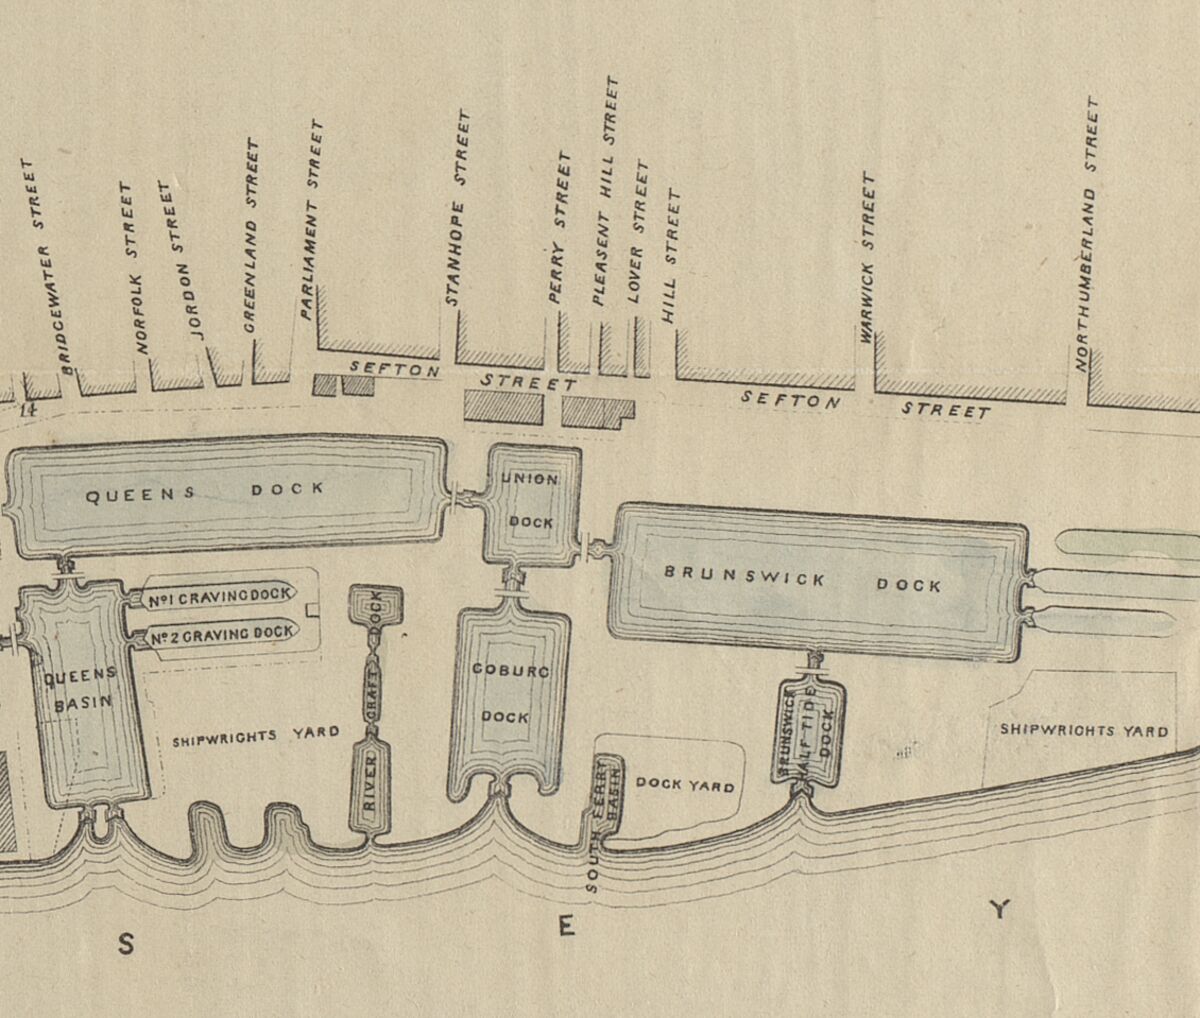 GFD 2/277: Das Union Dock, der Standort der Ankerschmiede Betteley & Roberts am Liverpooler Hafen (Ausschnitt aus dem Plan von Jesse Hartley, 1846)